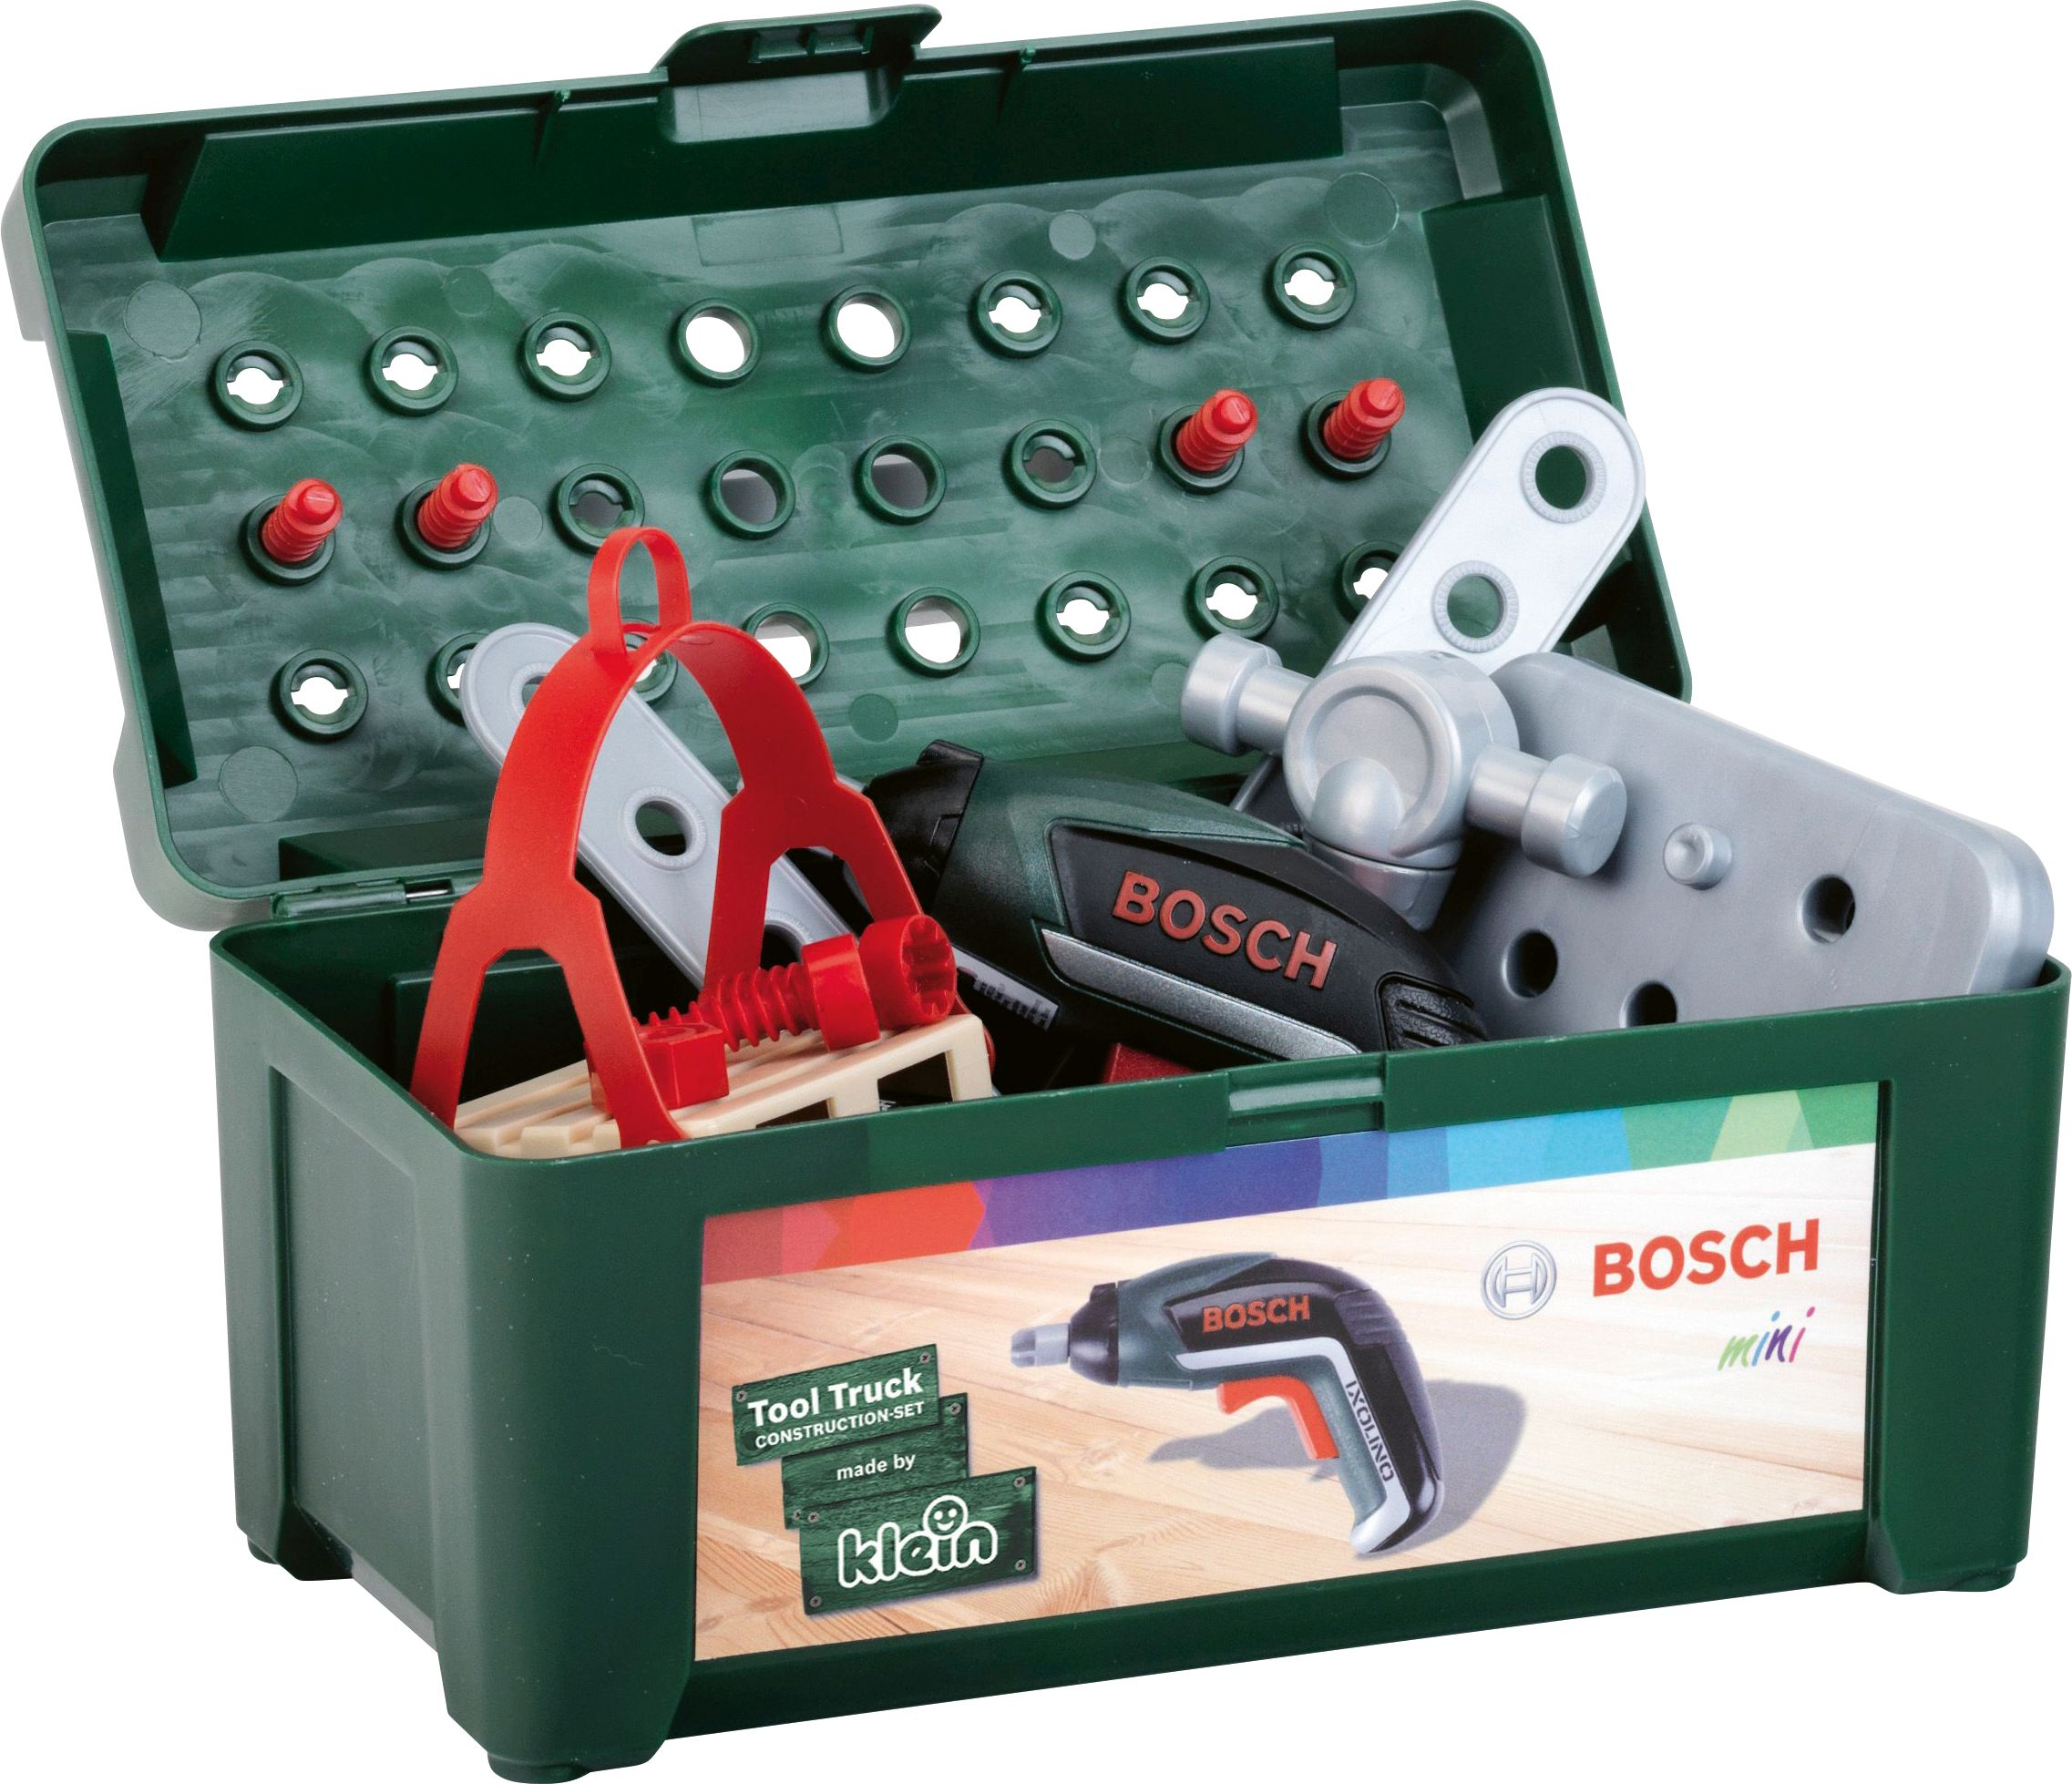 Bosch Ixolino Schraubtruck Set Mehrfarbig BOSCH + Rollenspielzeug